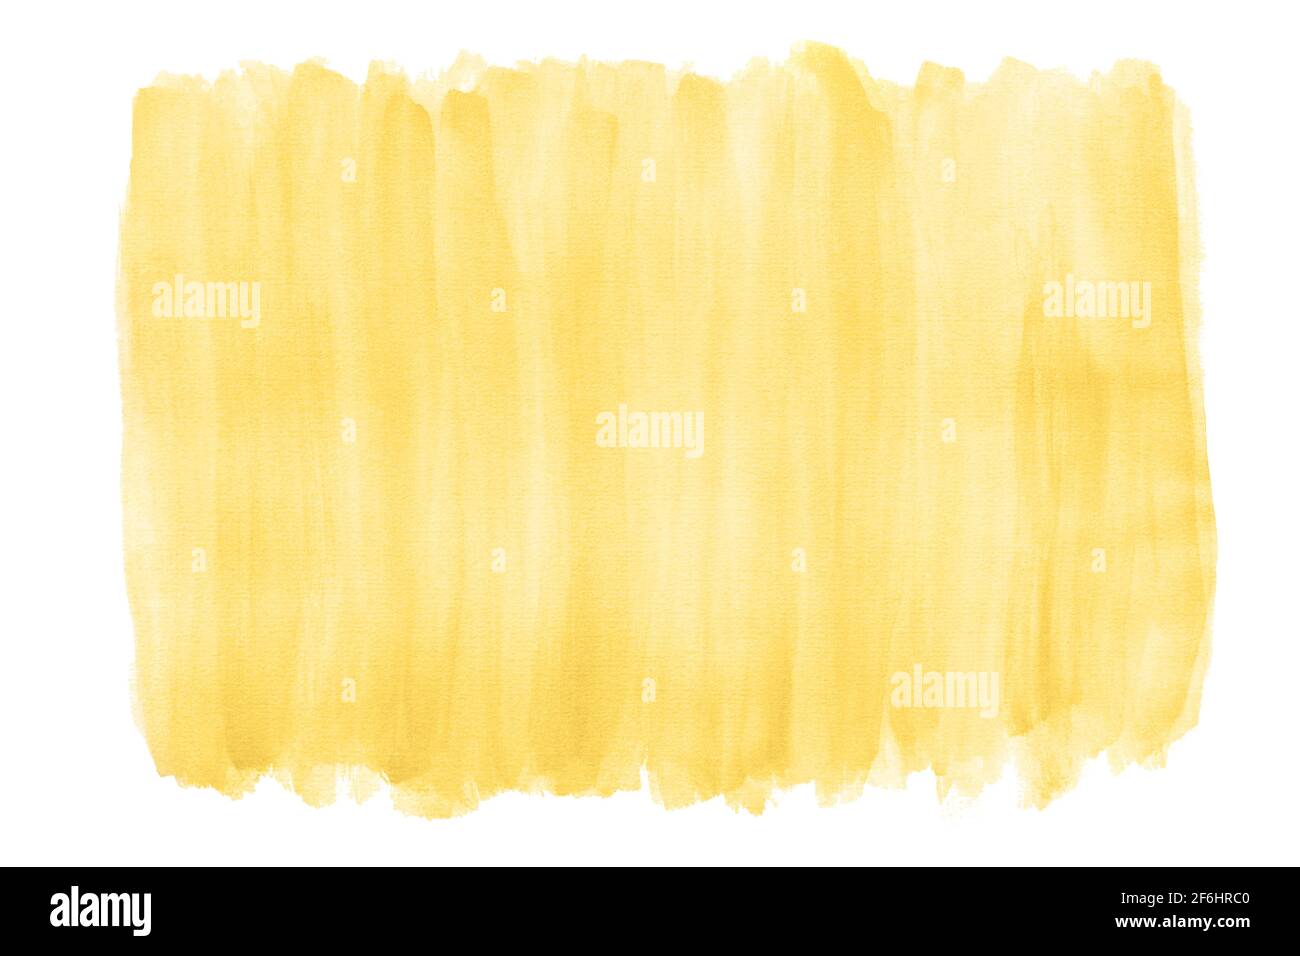 sfondo giallo acquerello con consistenza spazzolata e bordi ruvidi Foto Stock